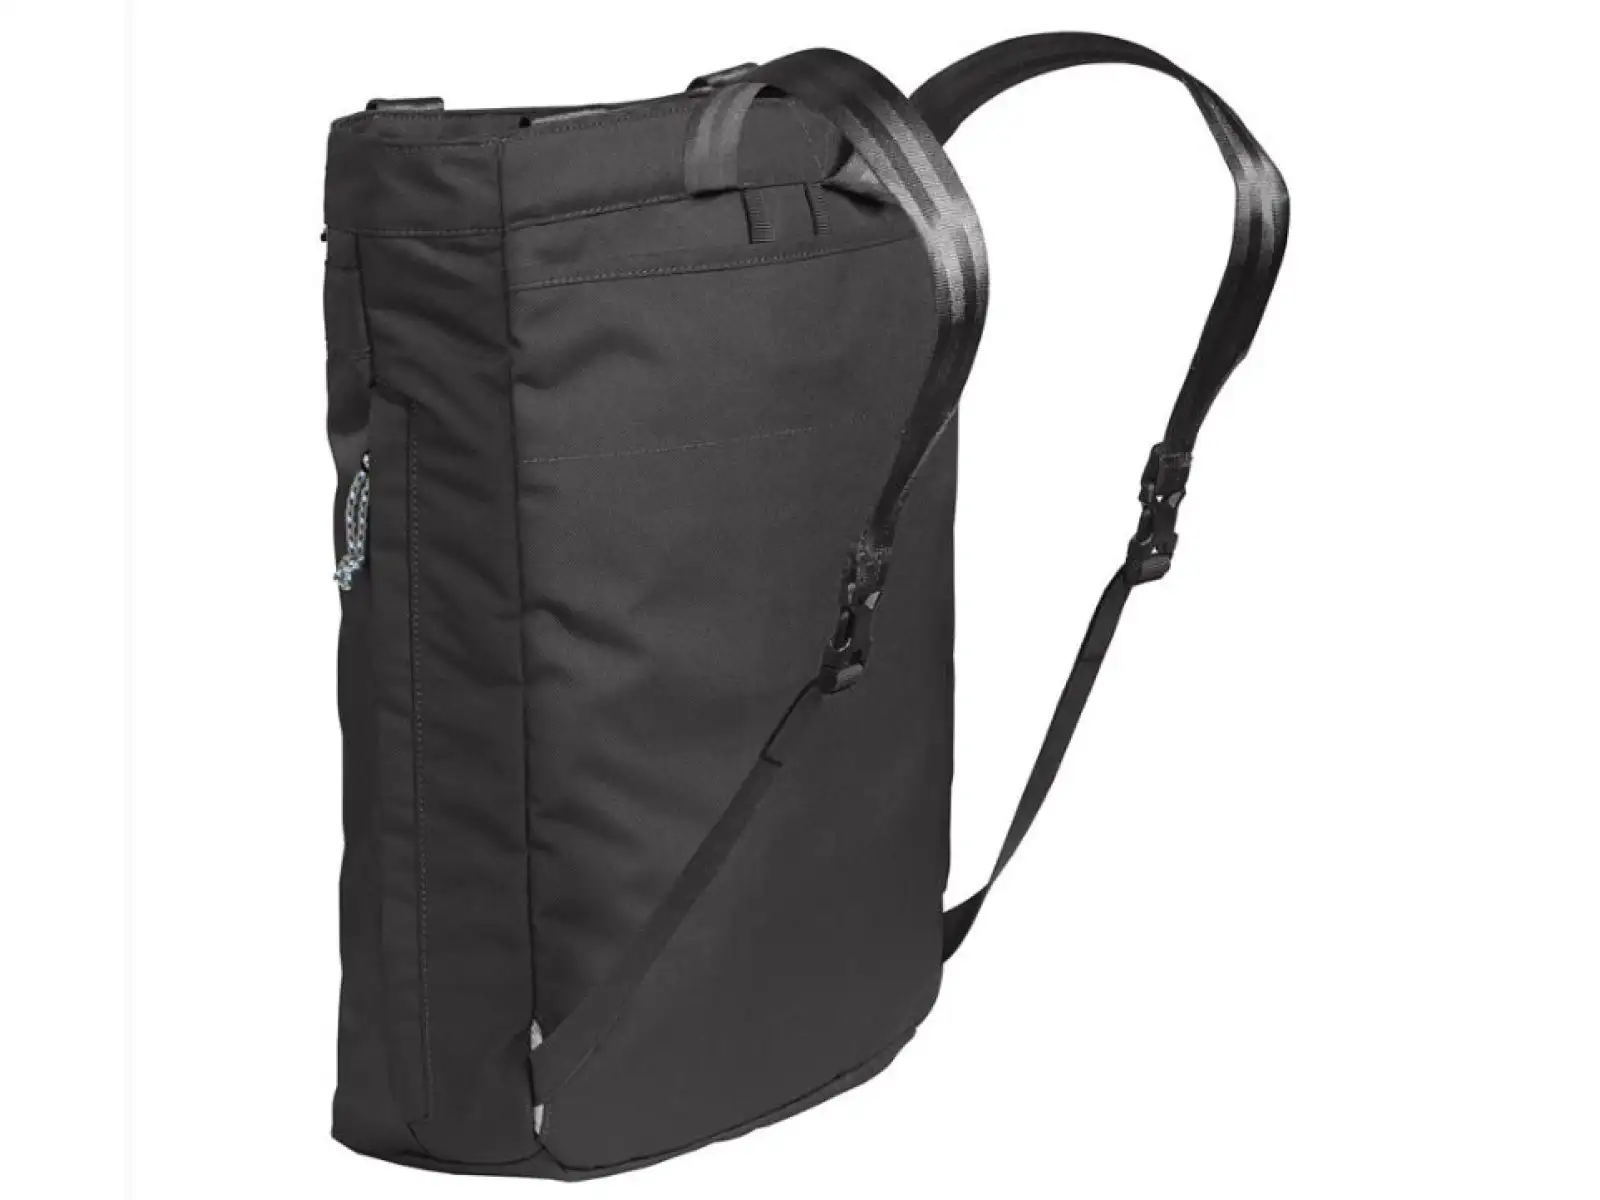 Camelbak Pivot Tote Pack Shoulder Bag Black